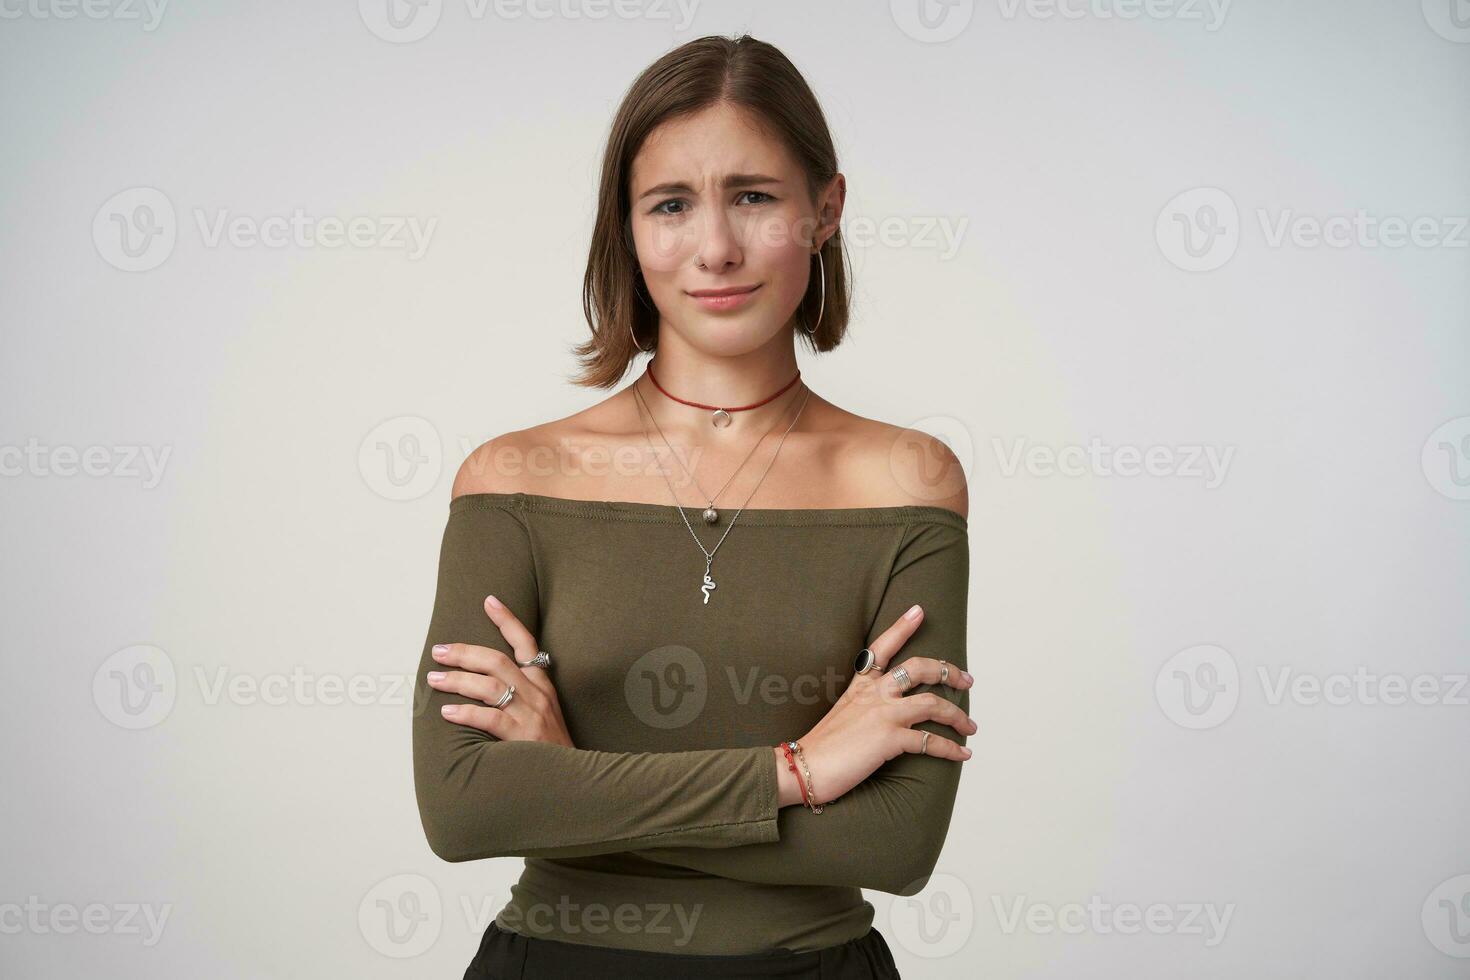 studio Foto av ung attraktiv kort håriga lady med naturlig smink förvaring henne mun vikta medan stående över vit bakgrund med korsade händer